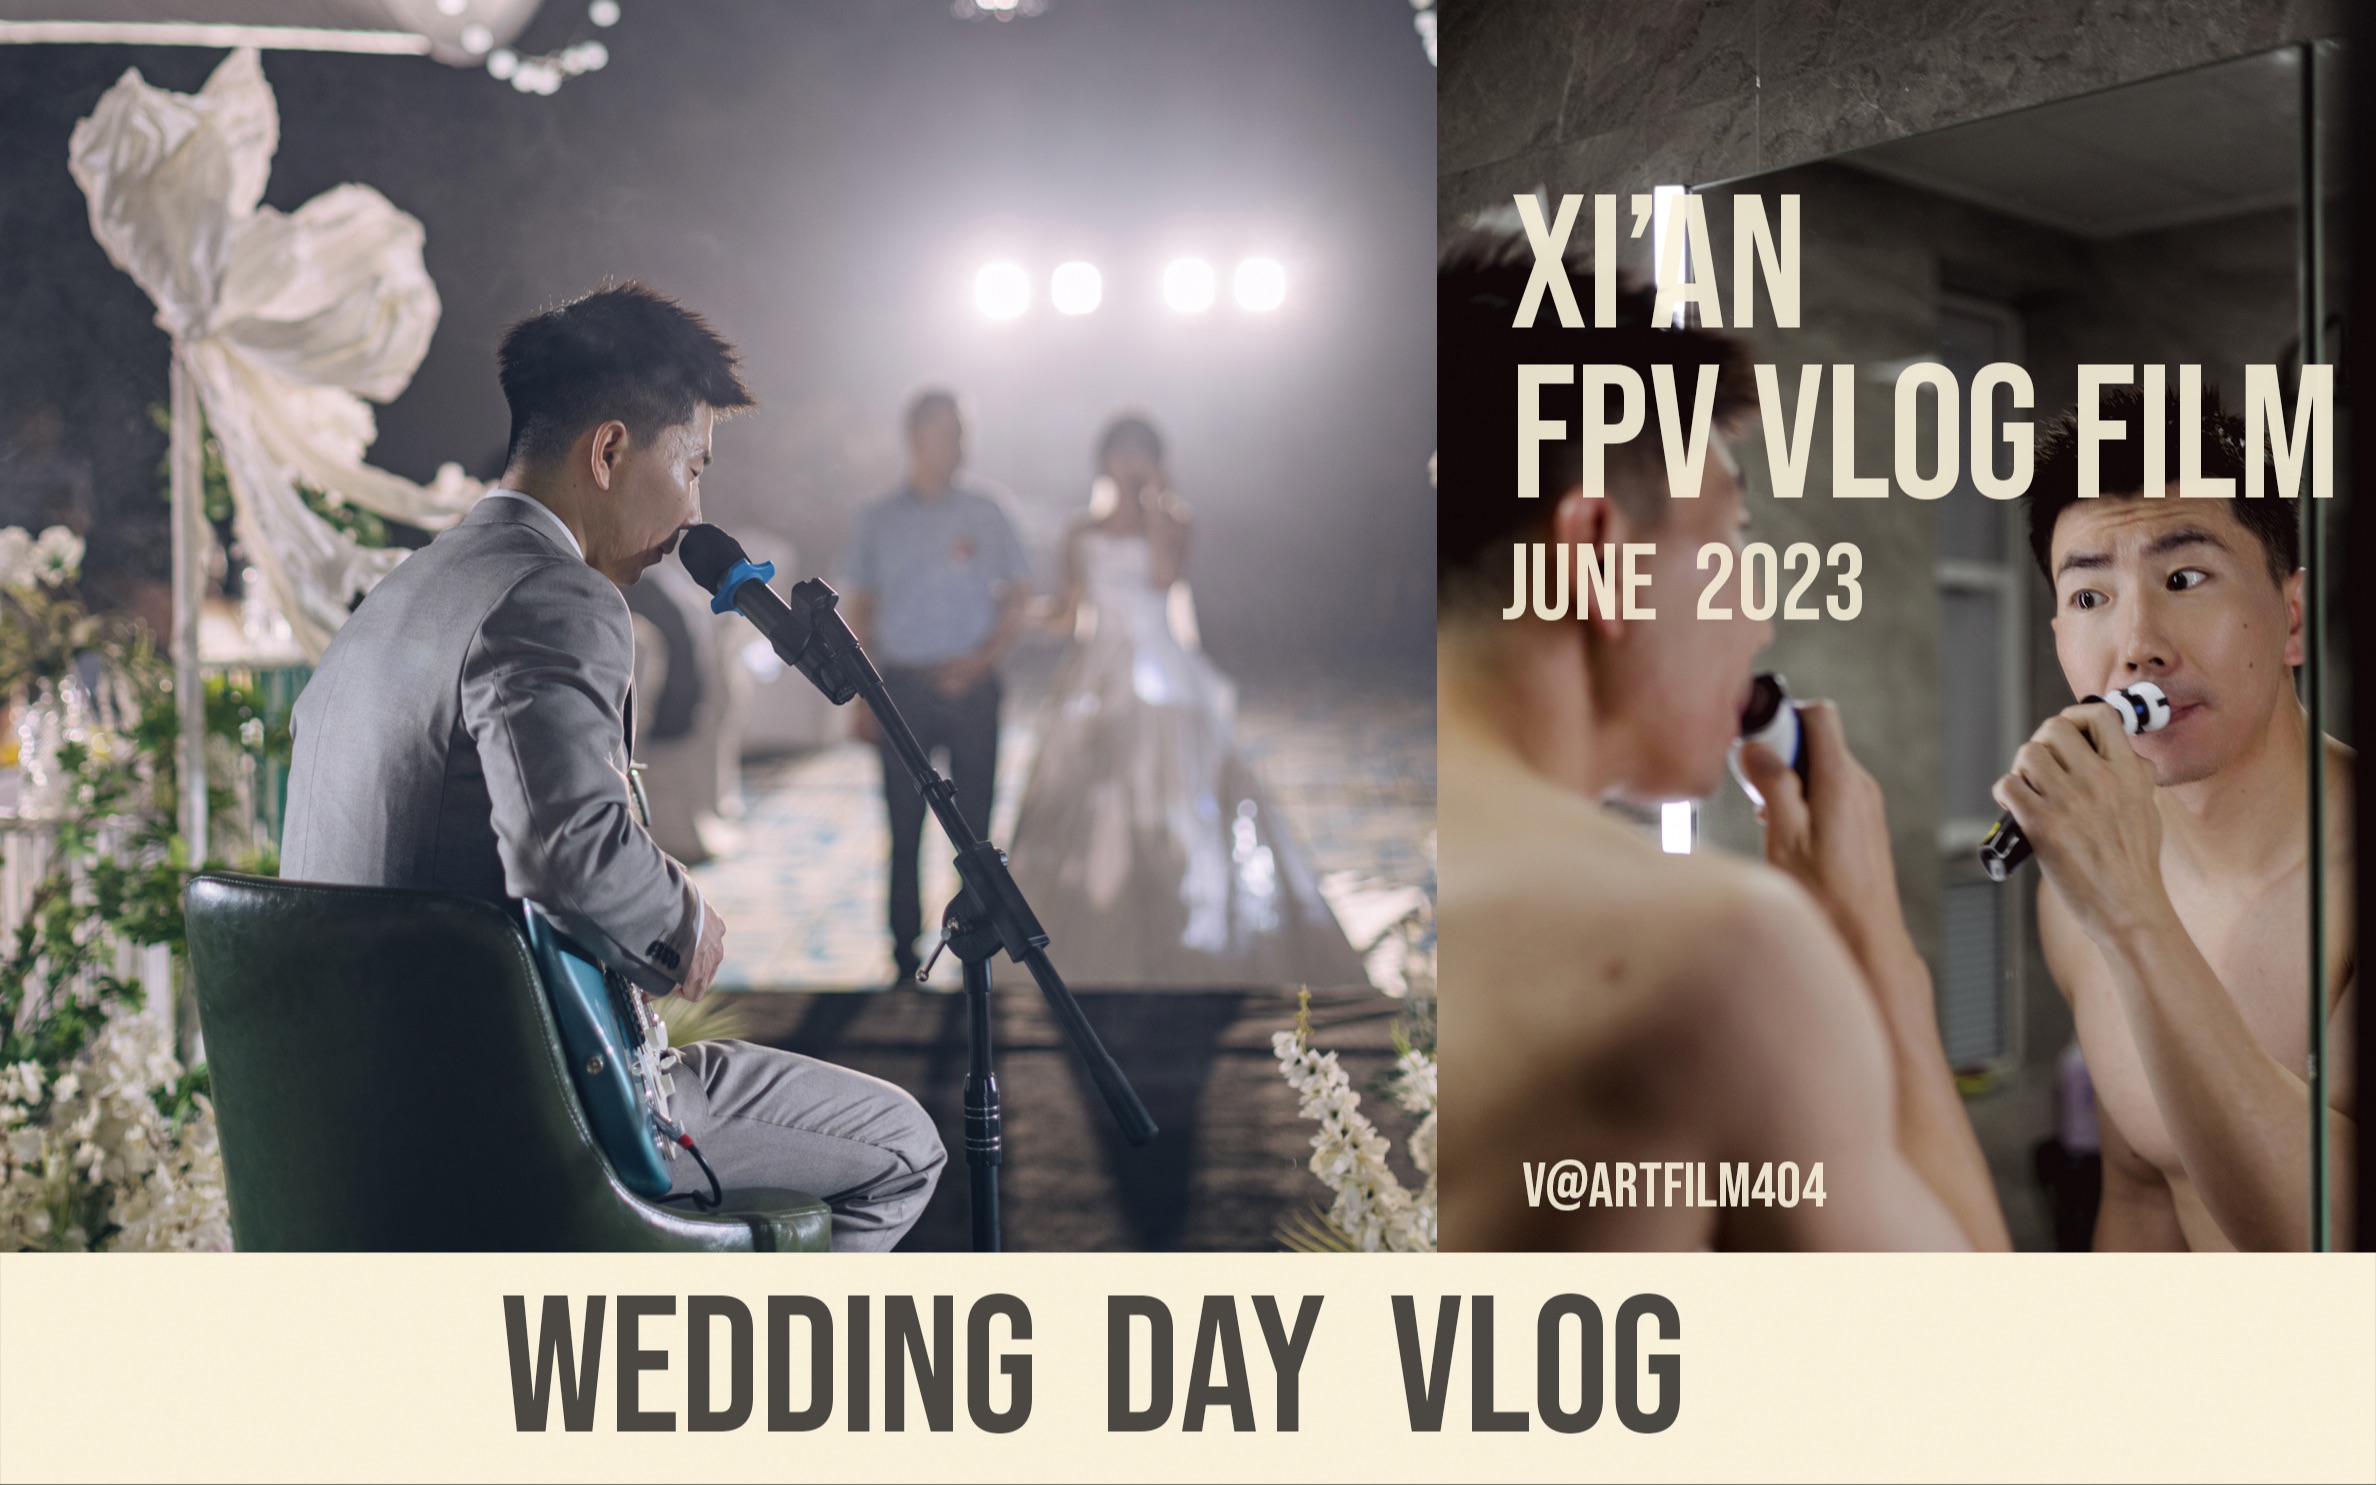 在唱哭所有人的歌声里步入婚礼现场，纪实婚礼摄影vlog第一视角